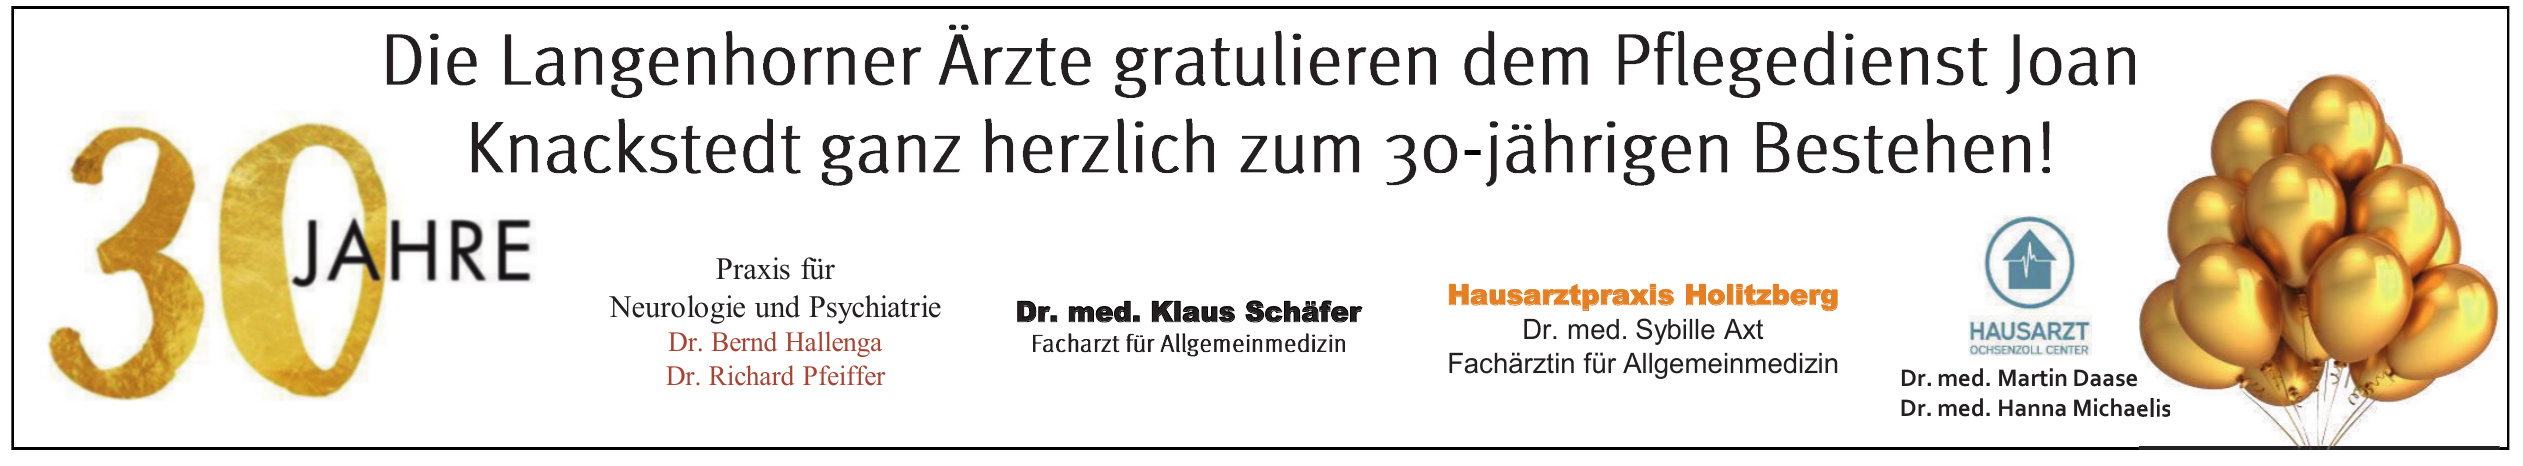 Praxis für Neurologie und Psychiatrie Dr. Bernd Hallenga, Dr. Richard Pfeiffer